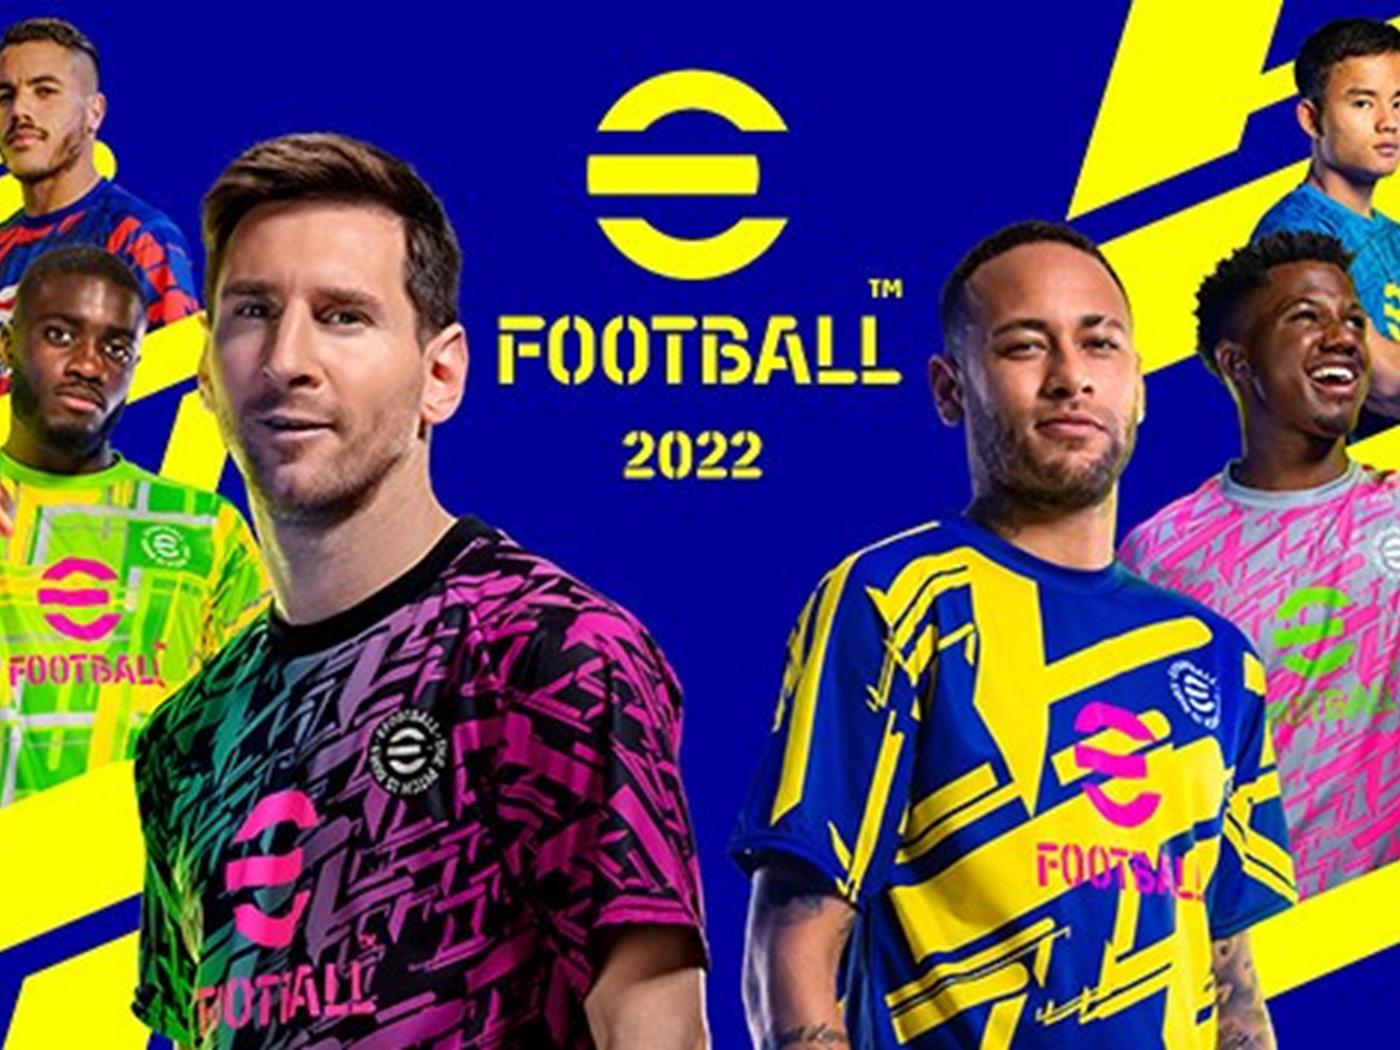 pes oyunu efootball 2022'nin tam sürüm güncellemesi yayınlandı |  donanımhaber